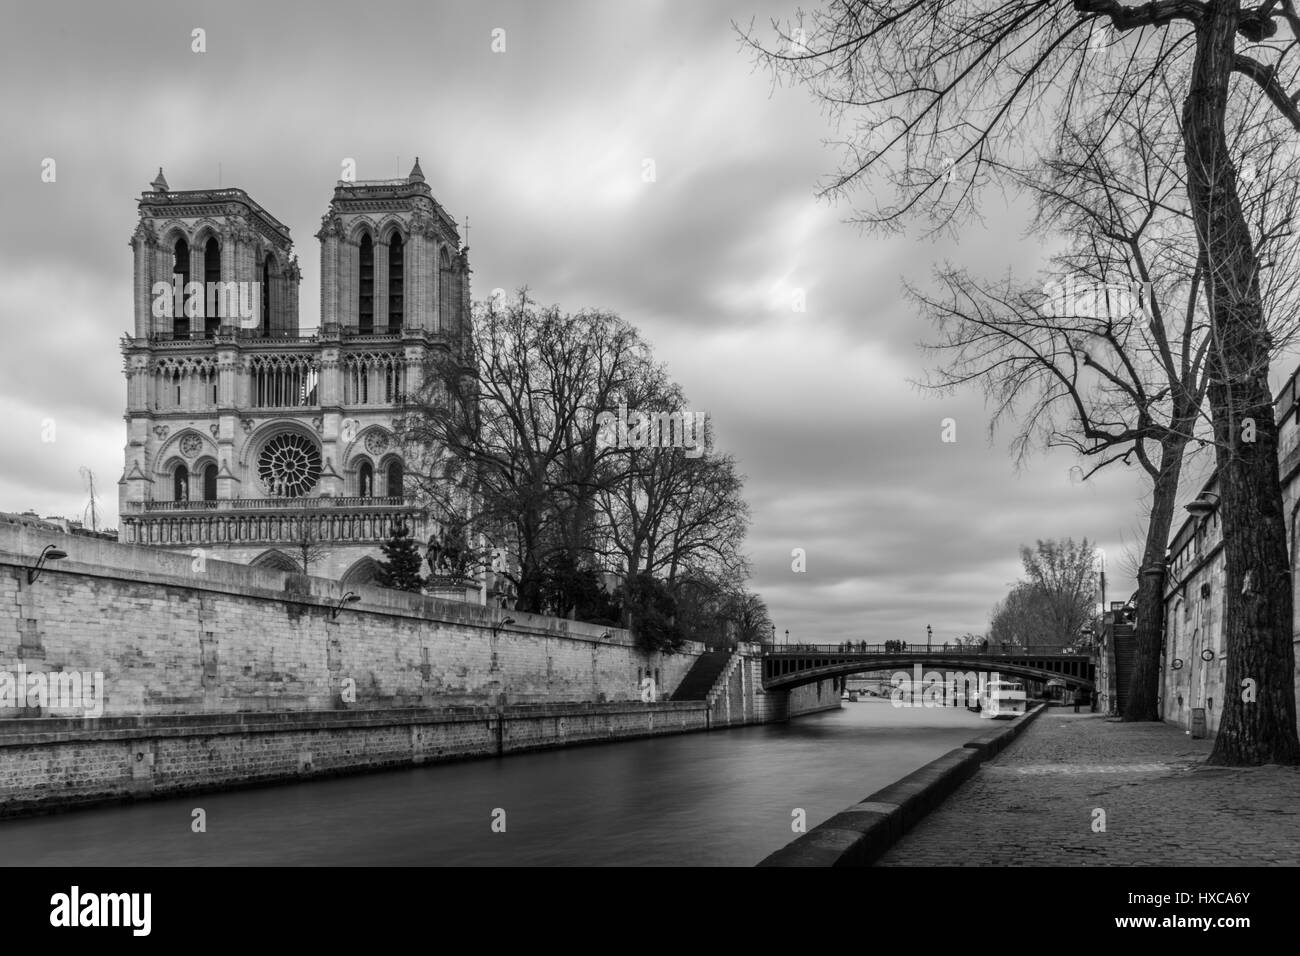 Notre Dame de Paris Stock Photo